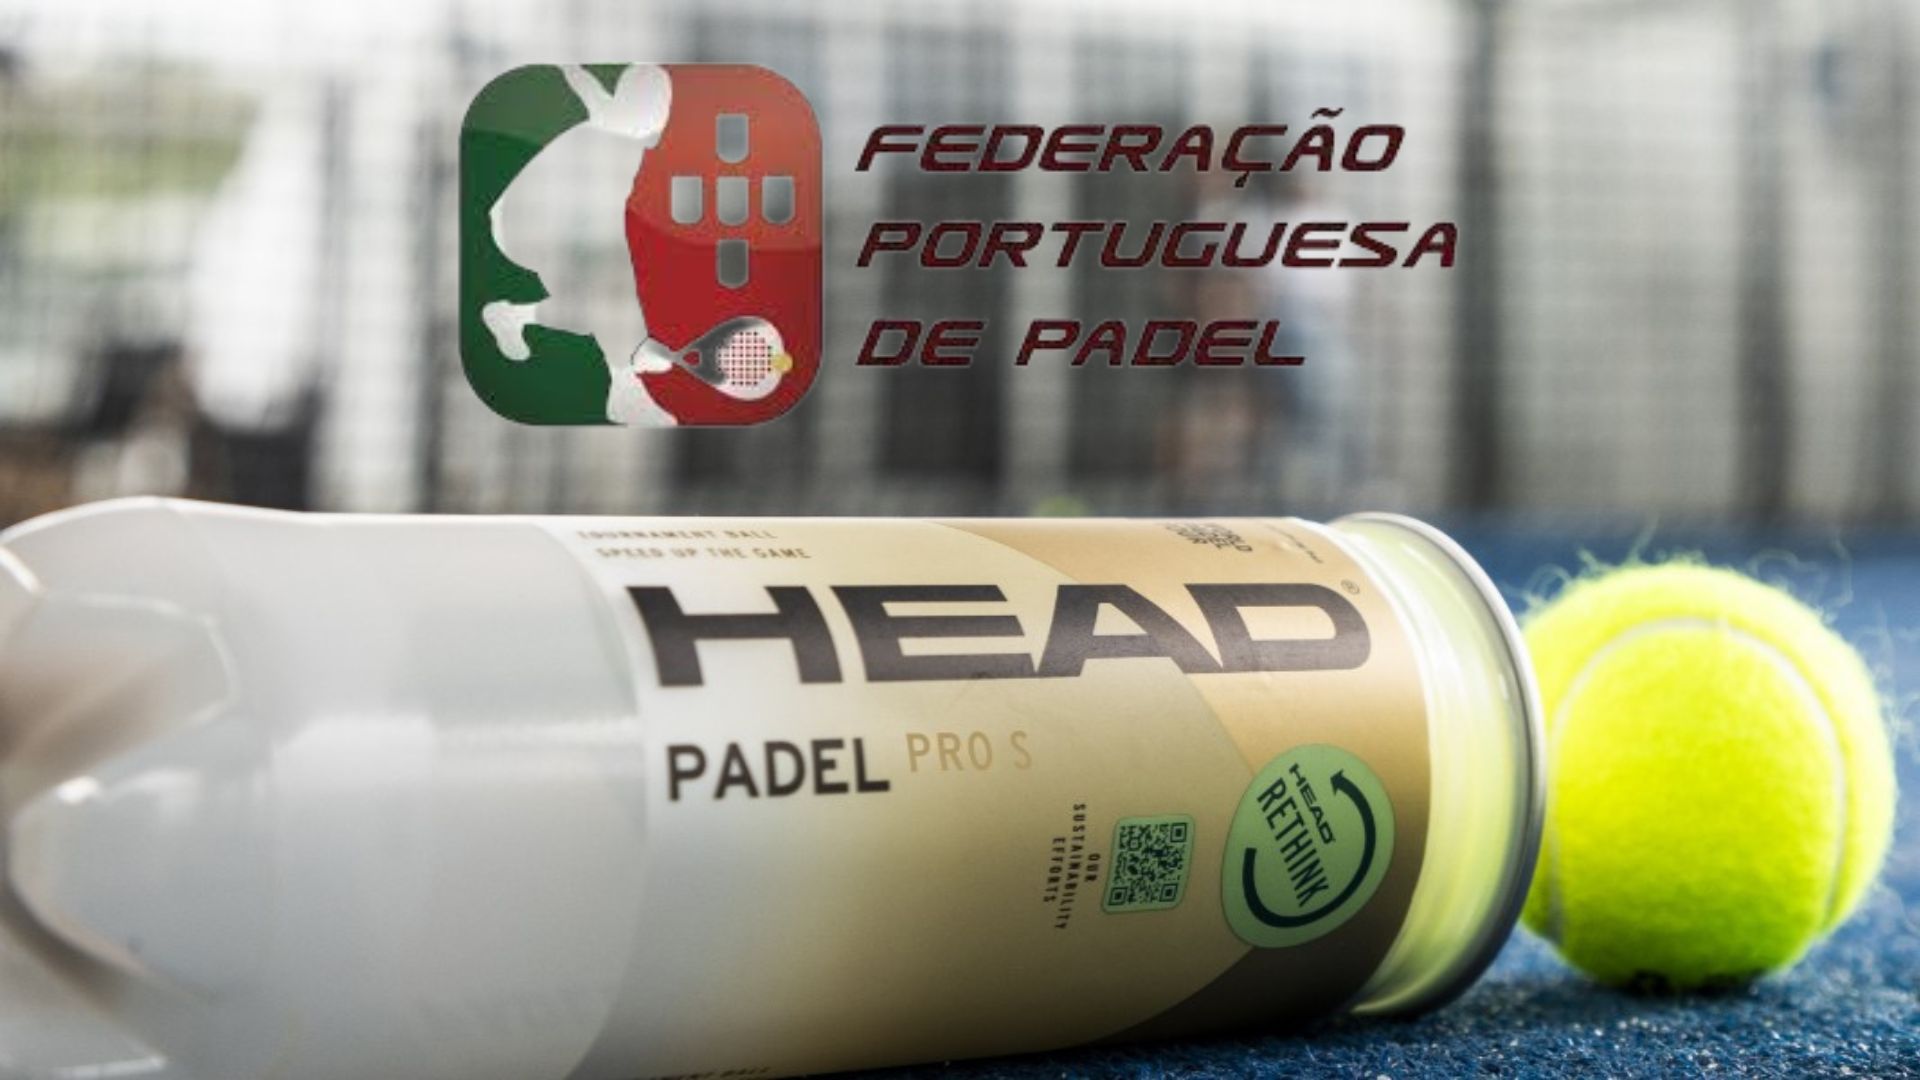 Head verlängert seinen Vertrag mit dem portugiesischen Fußballverband padel, mit etwas Neuem!